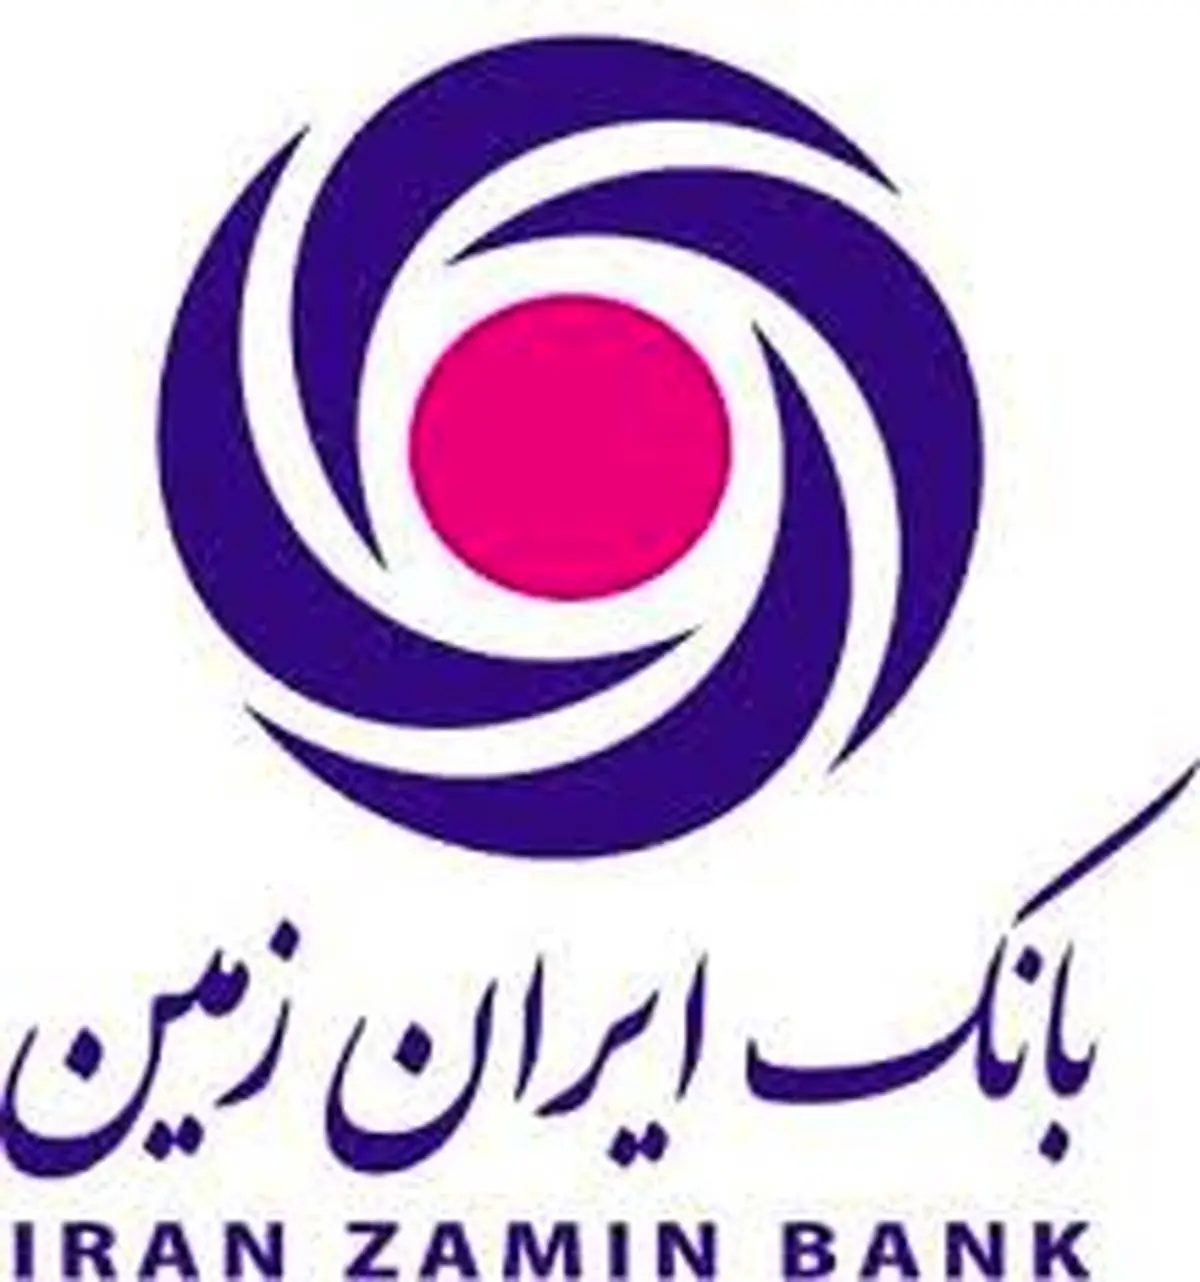 حرکت گام به گام ایران زمین تا تحقق بانکداری دیجیتال

